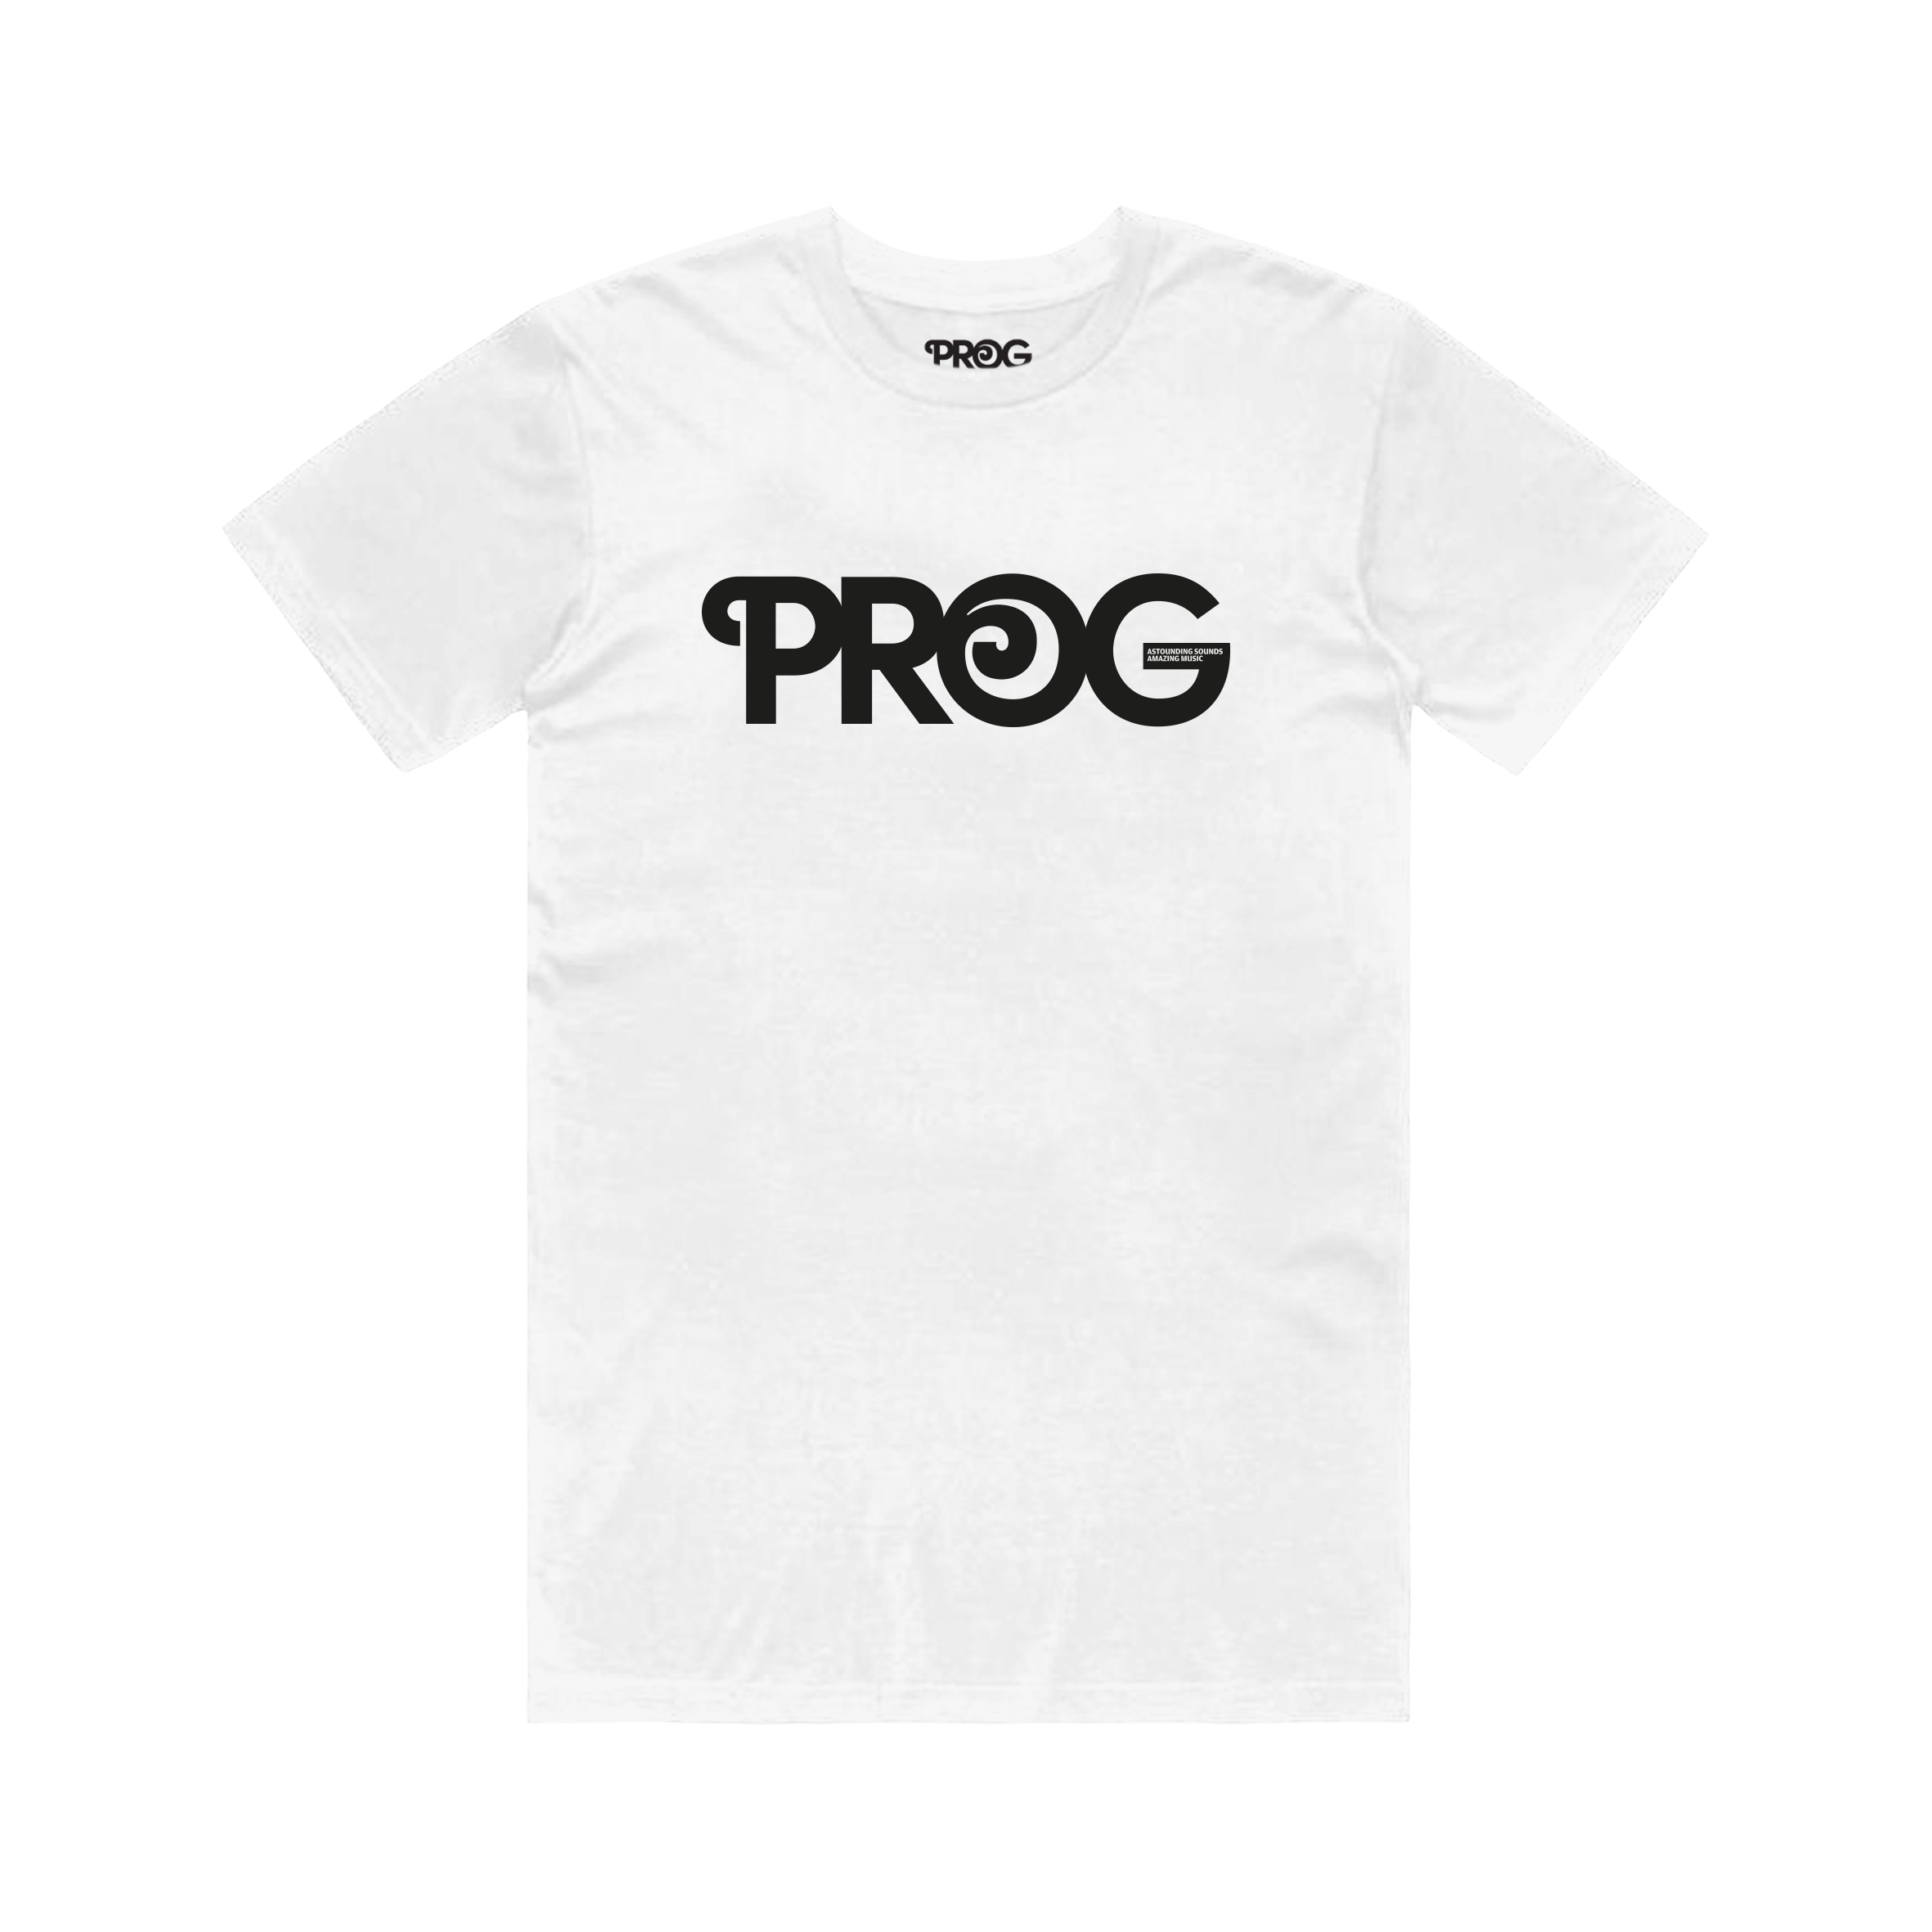 Prog - Classic T-Shirt